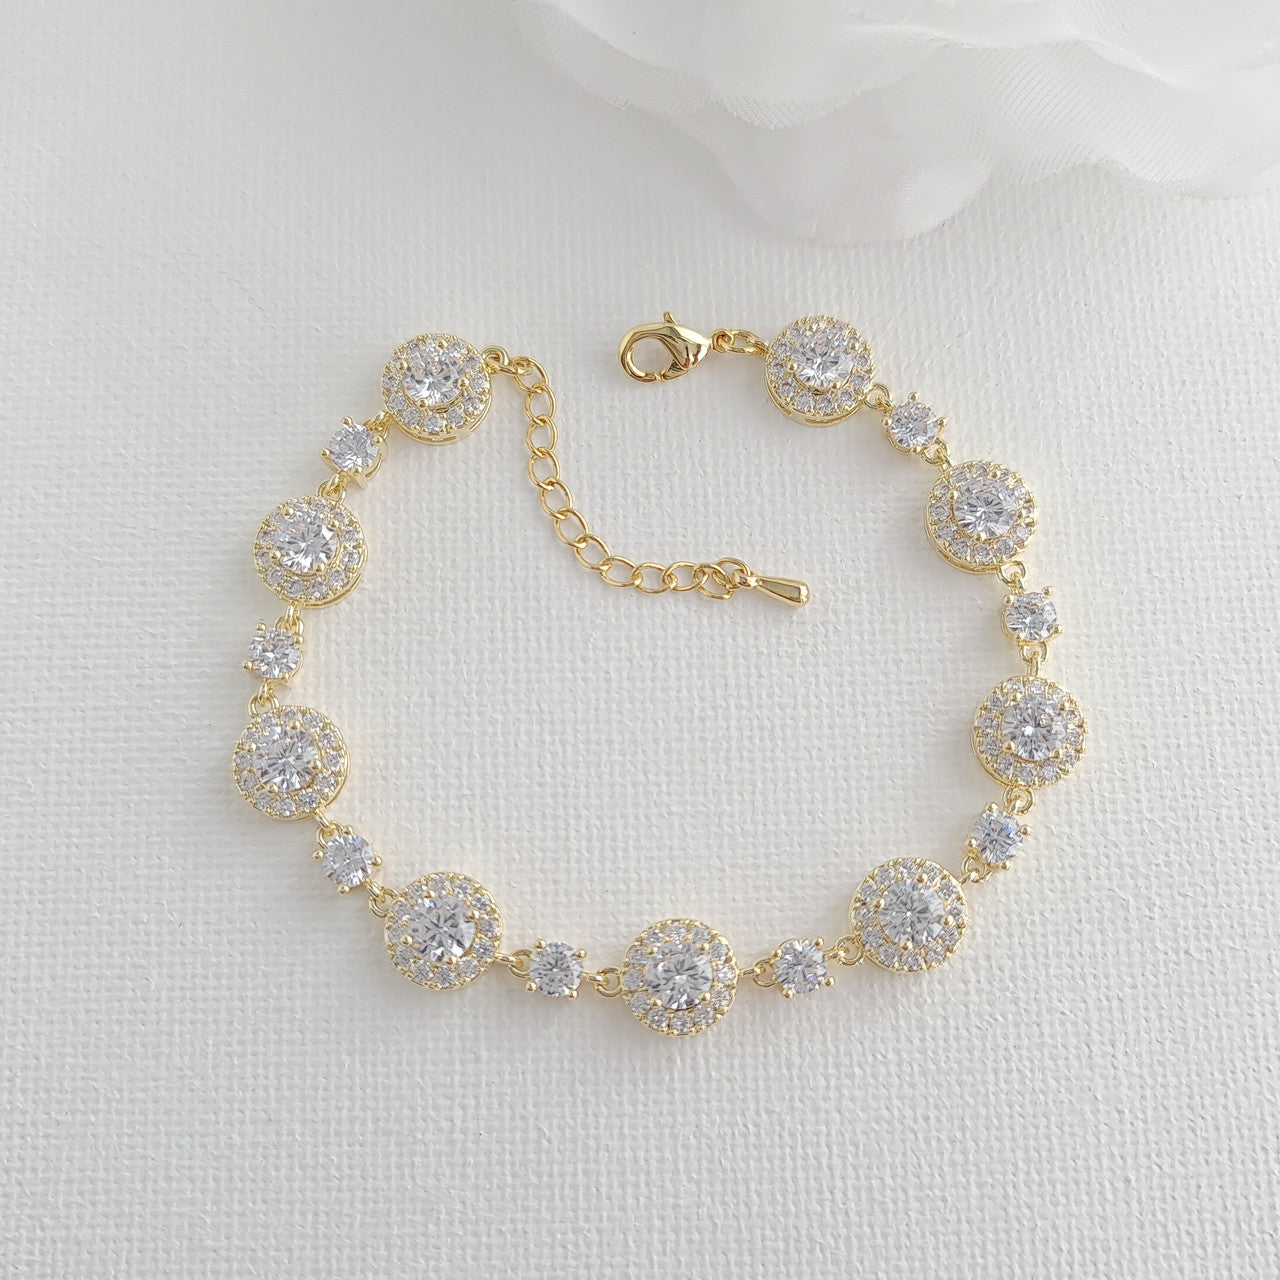 Rose Gold Earrings Bracelet Set for Brides- Reagan